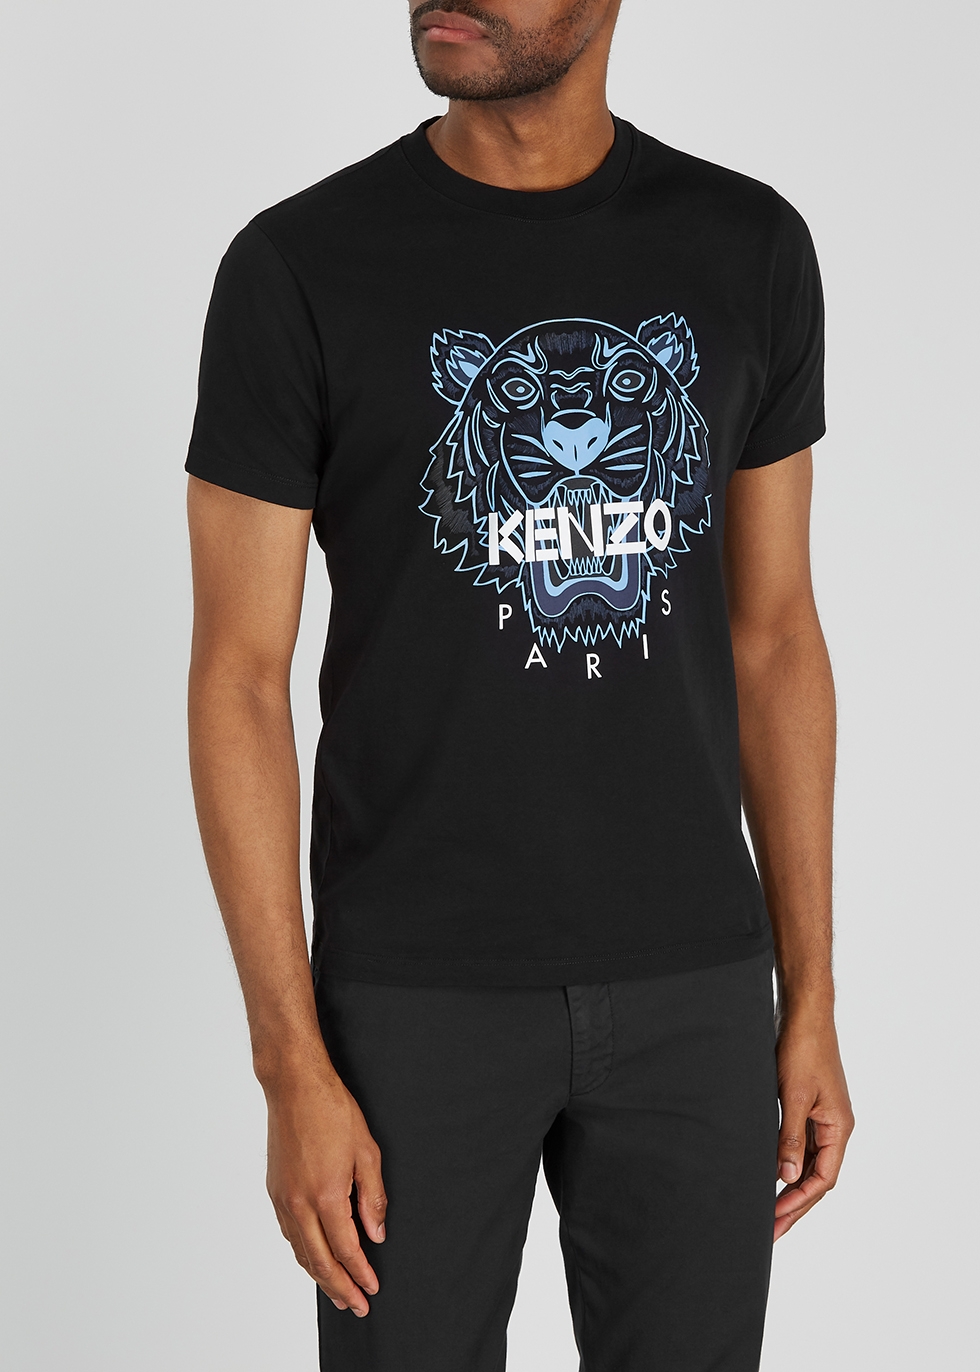 all black kenzo t shirt